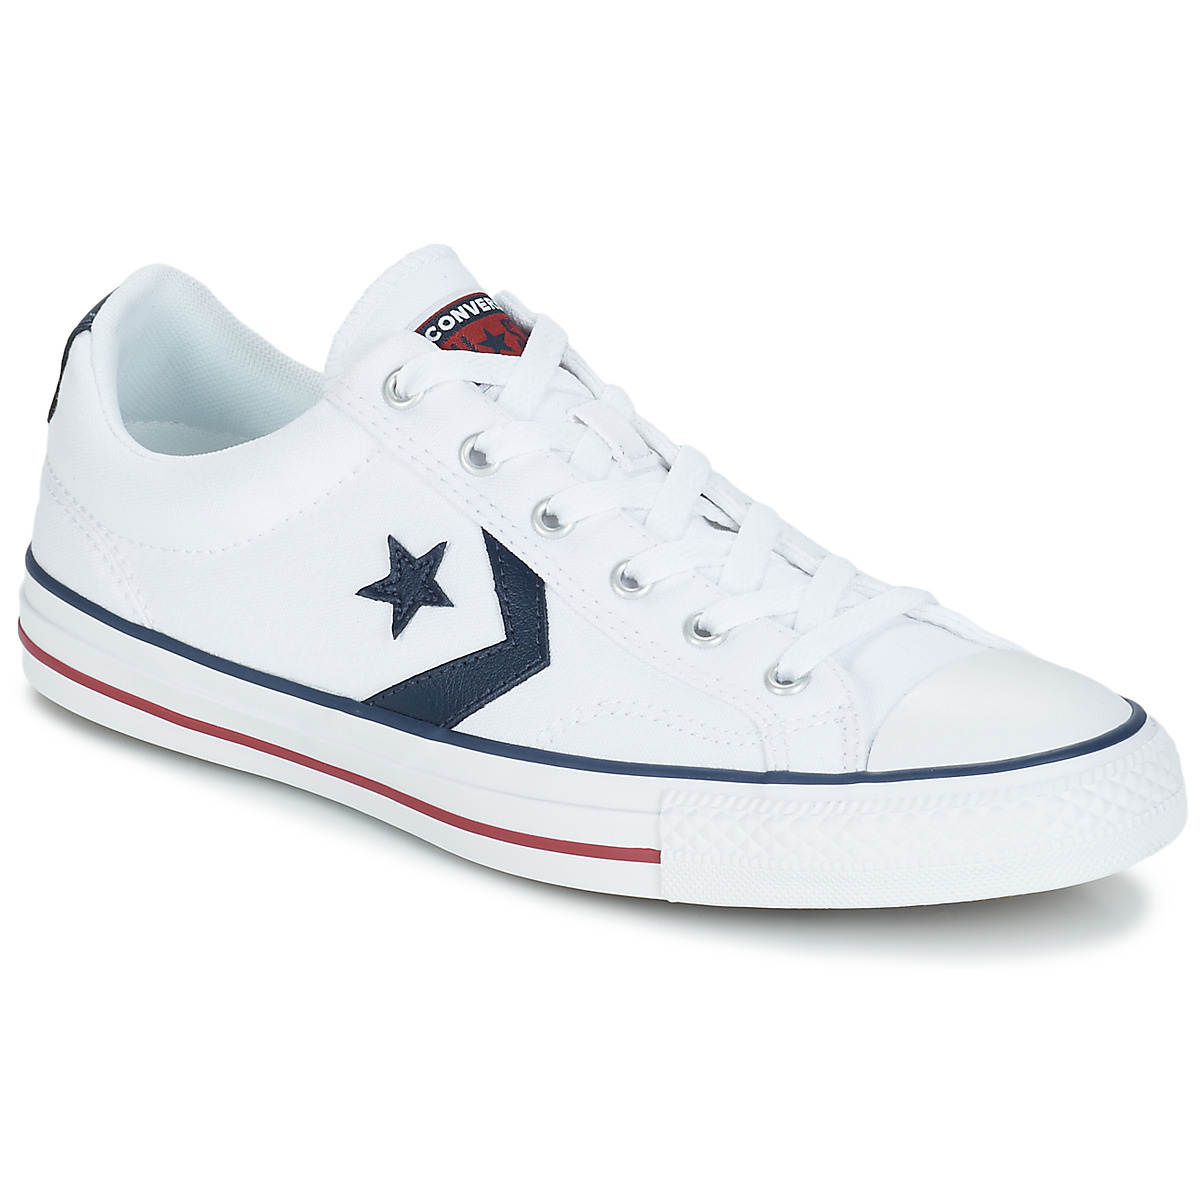 Converse STAR PLAYER OX Blanco - Envío gratis | Spartoo.es ! - Zapatos  Deportivas bajas Hombre 46,79 €